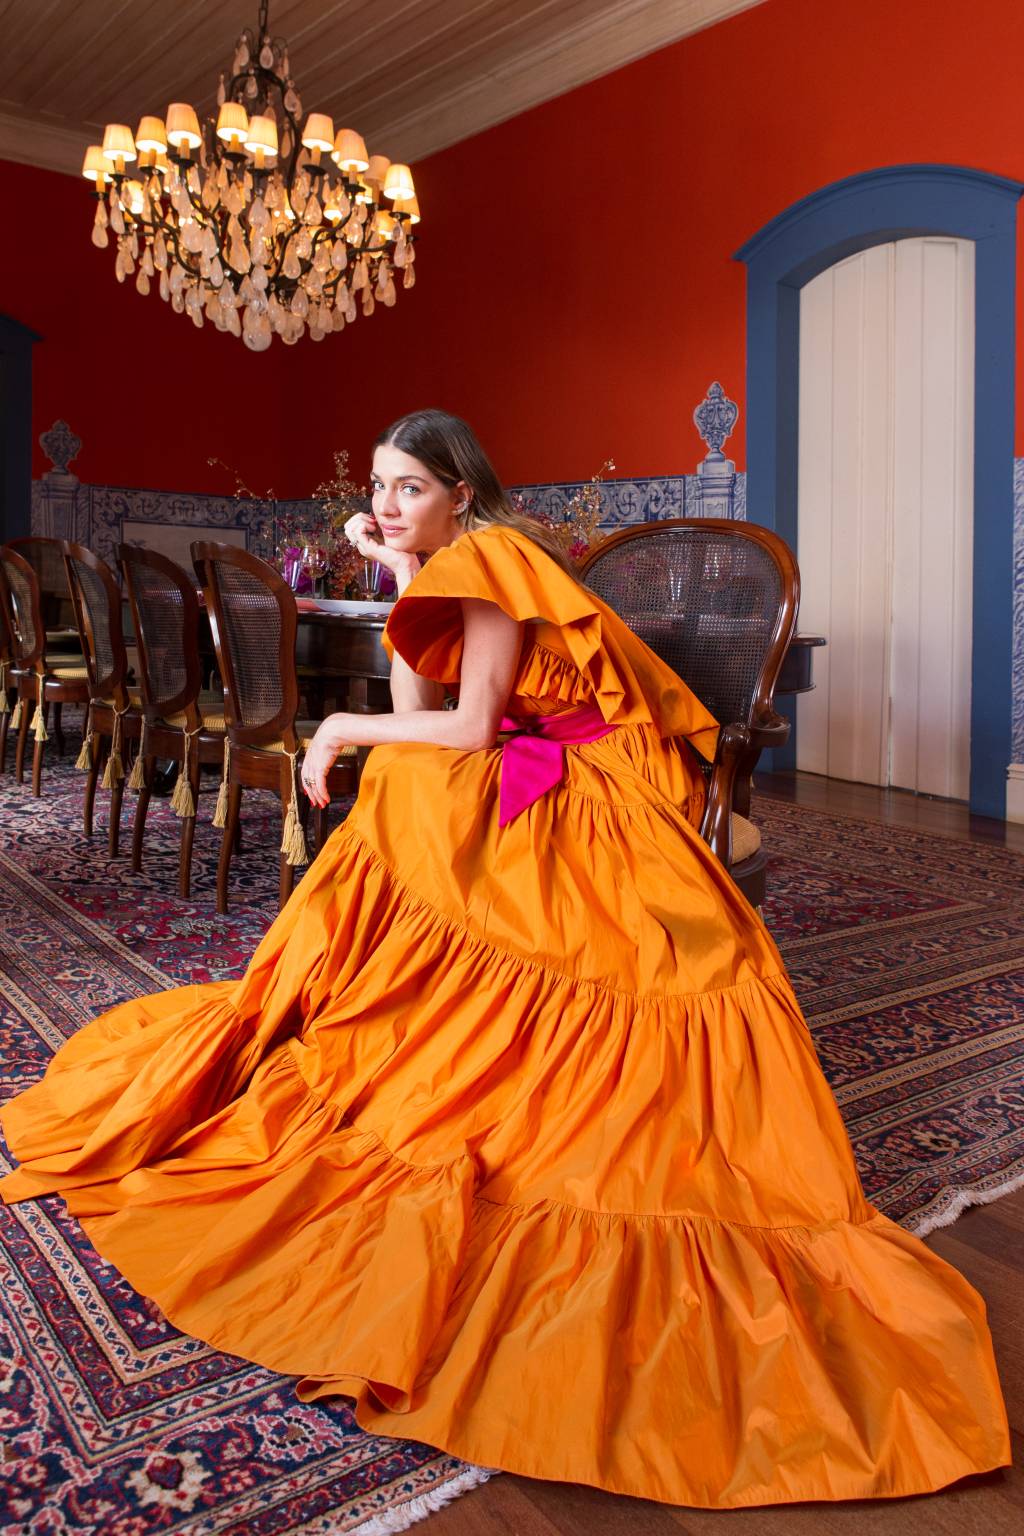 Luma Costa posa sentada com grande vestido laranja espalhado pelo chão.